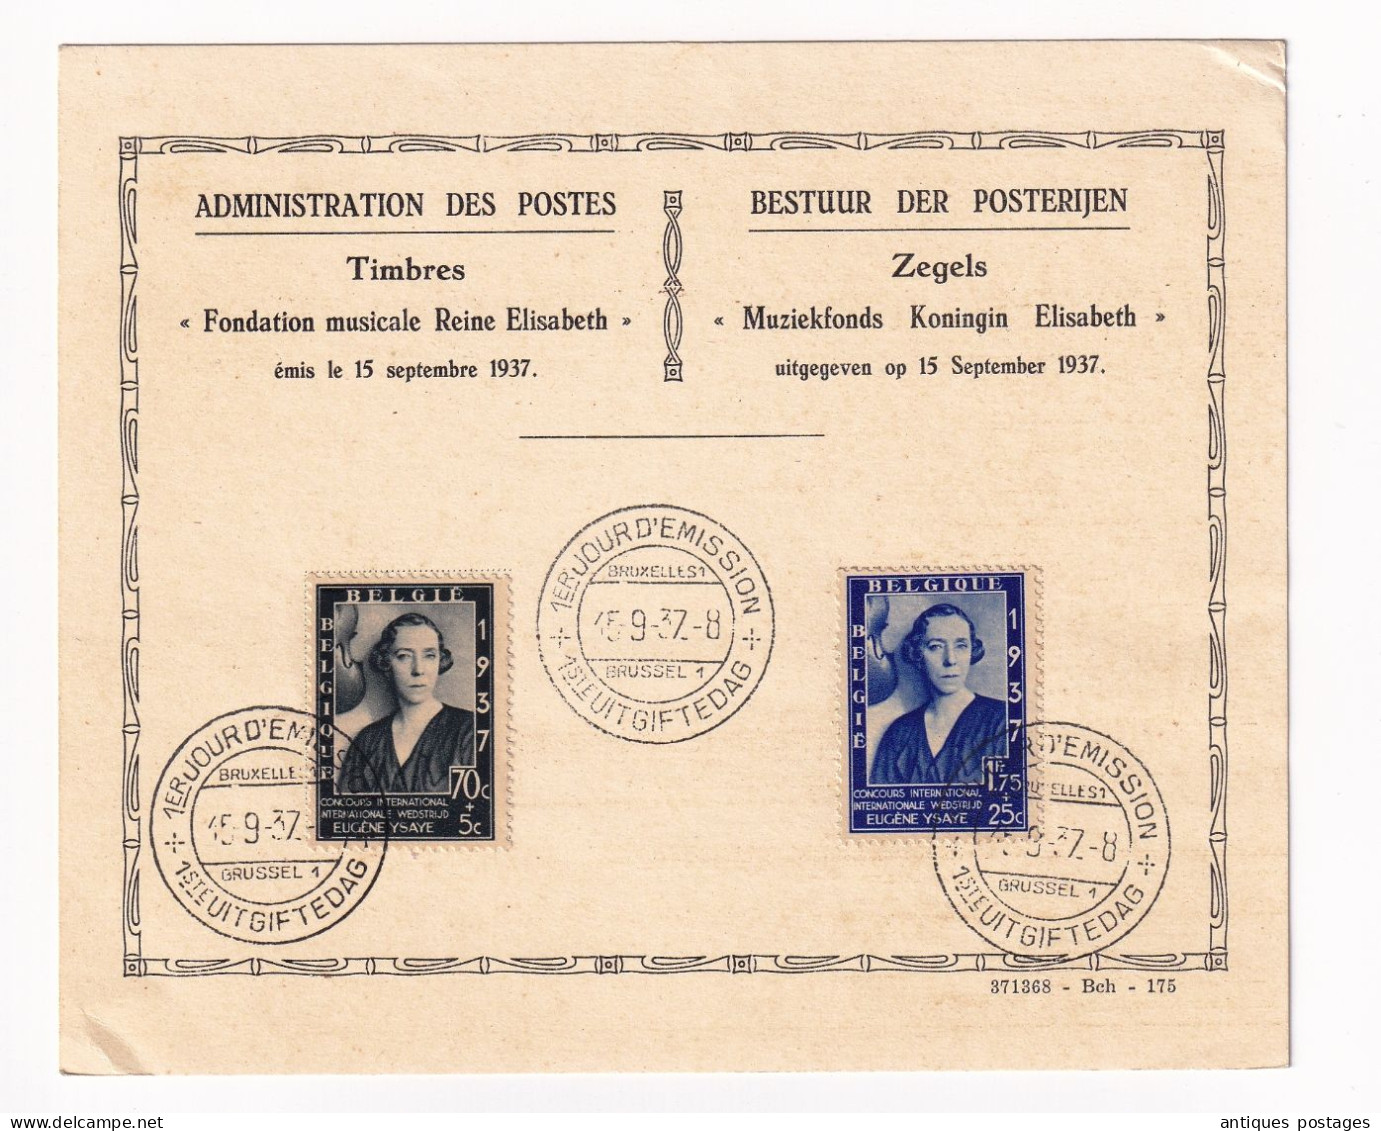 Belgique 1937 Fondation Musicale De La Reine Elisabeth Bruxelles Eugène Ysaye Administration Des Poste - Covers & Documents